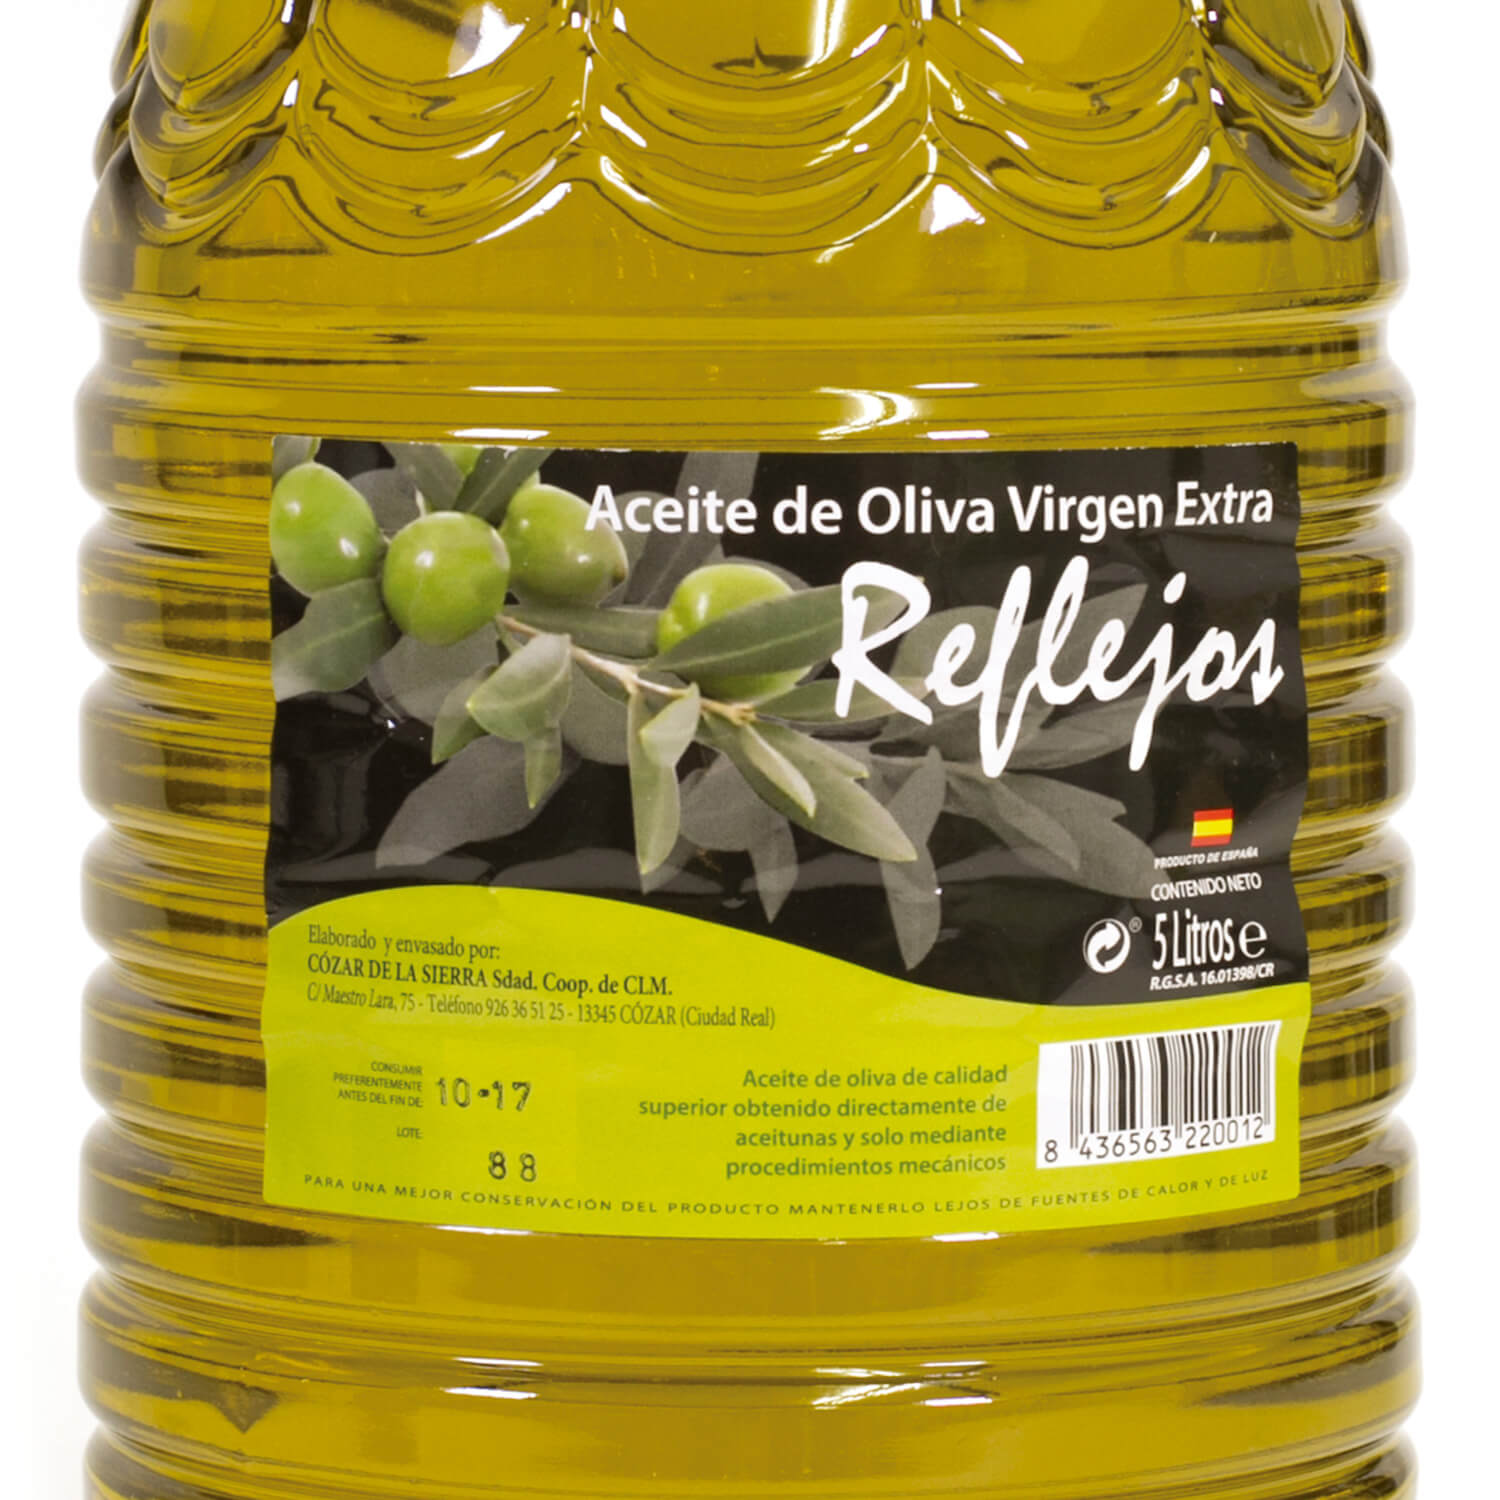 Aceite de oliva virgen extra 5l al mejor precio- Lote 3 garrafas